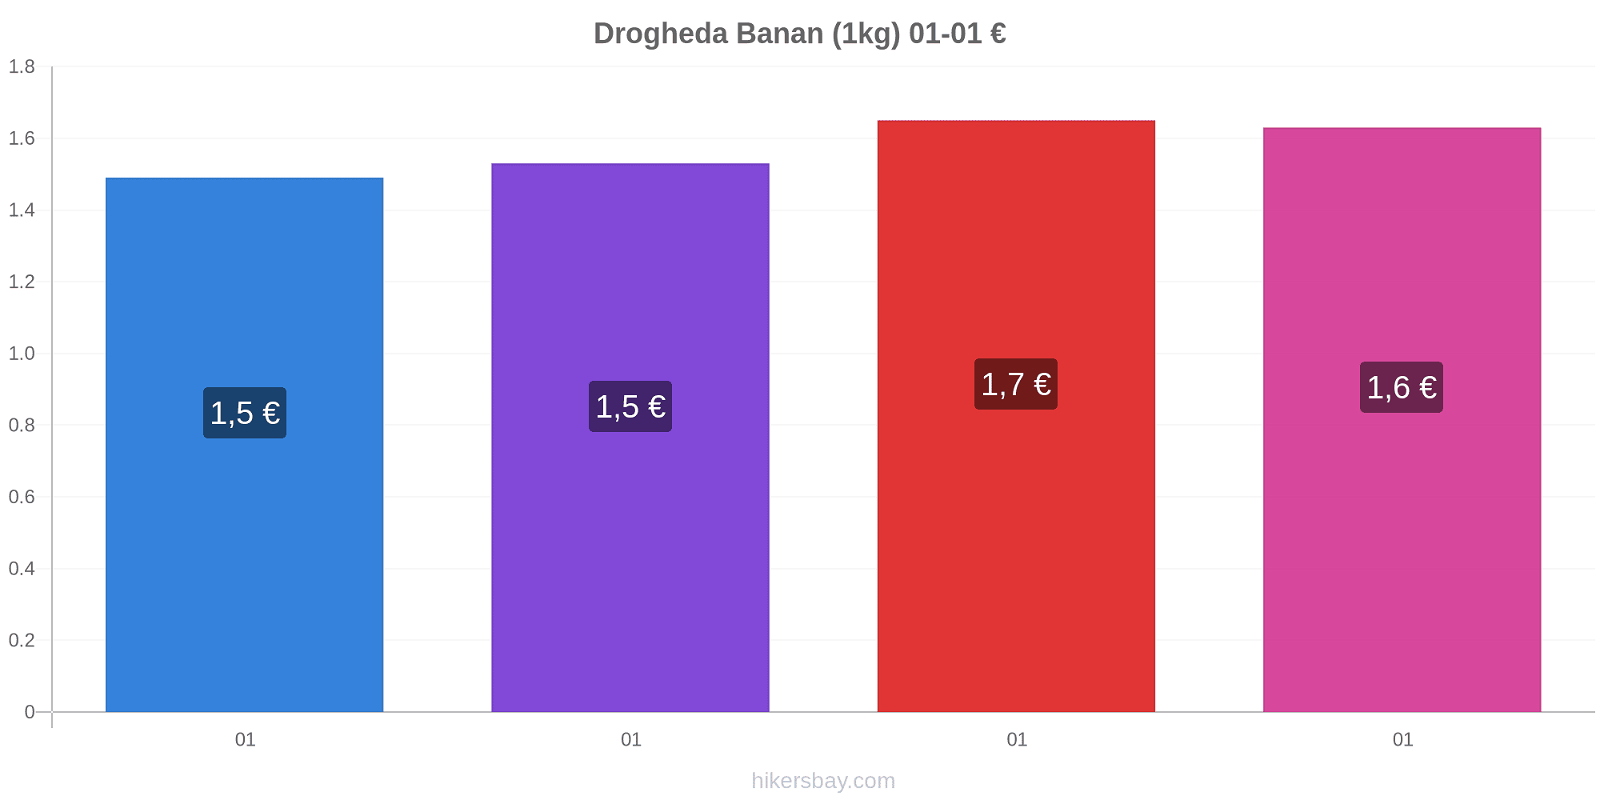 Drogheda prisförändringar Banan (1kg) hikersbay.com